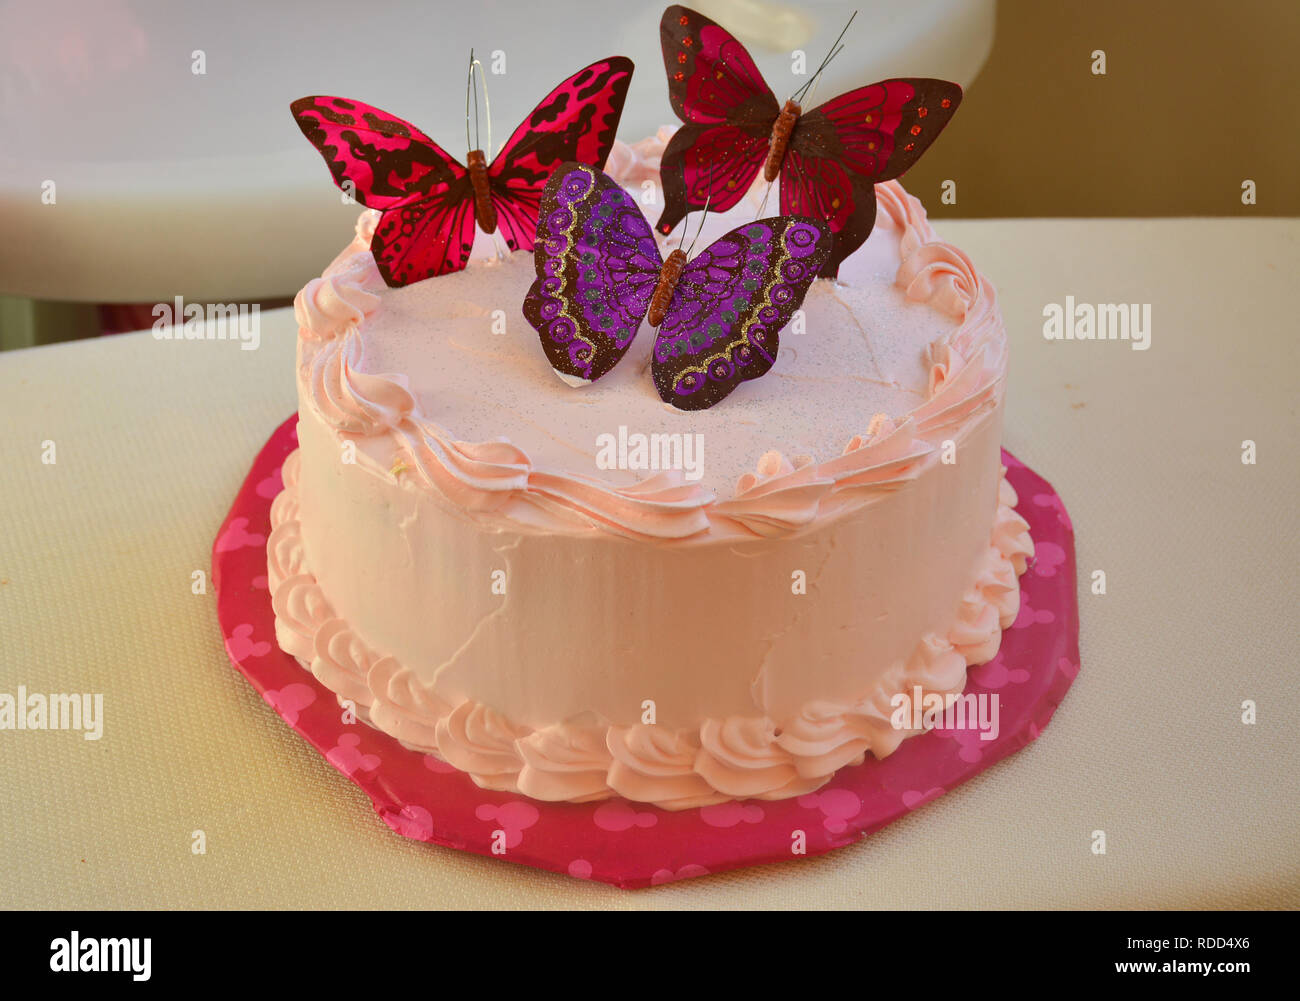 Gâteau décoré aux couleurs vives avec de doux papillons. Gâteau d'anniversaire Banque D'Images